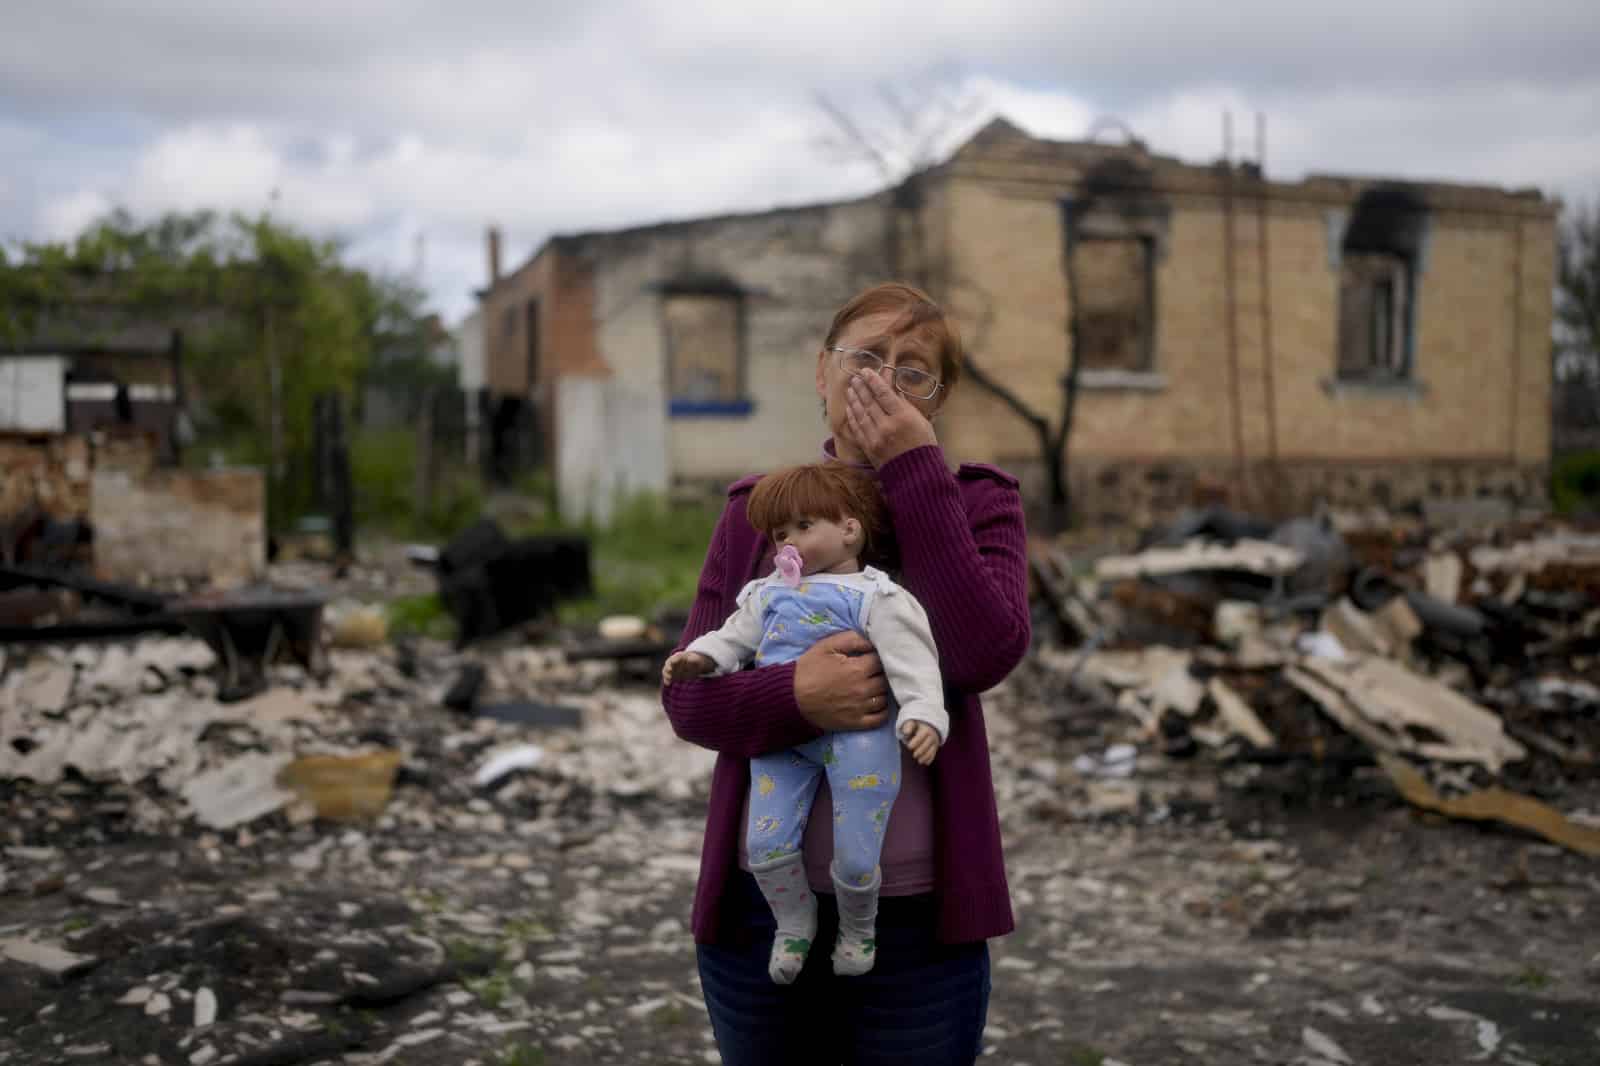 ARCHIVO - Nila Zelinska sostiene una muñeca perteneciente a su nieta, que pudo encontrar en su casa destruida en las afueras de Potashnya, Kyiv, Ucrania, el martes 31 de mayo de 2022. Zelinska acaba de regresar a su ciudad natal después de escapar de la guerra y descubrir que no tiene hogar.